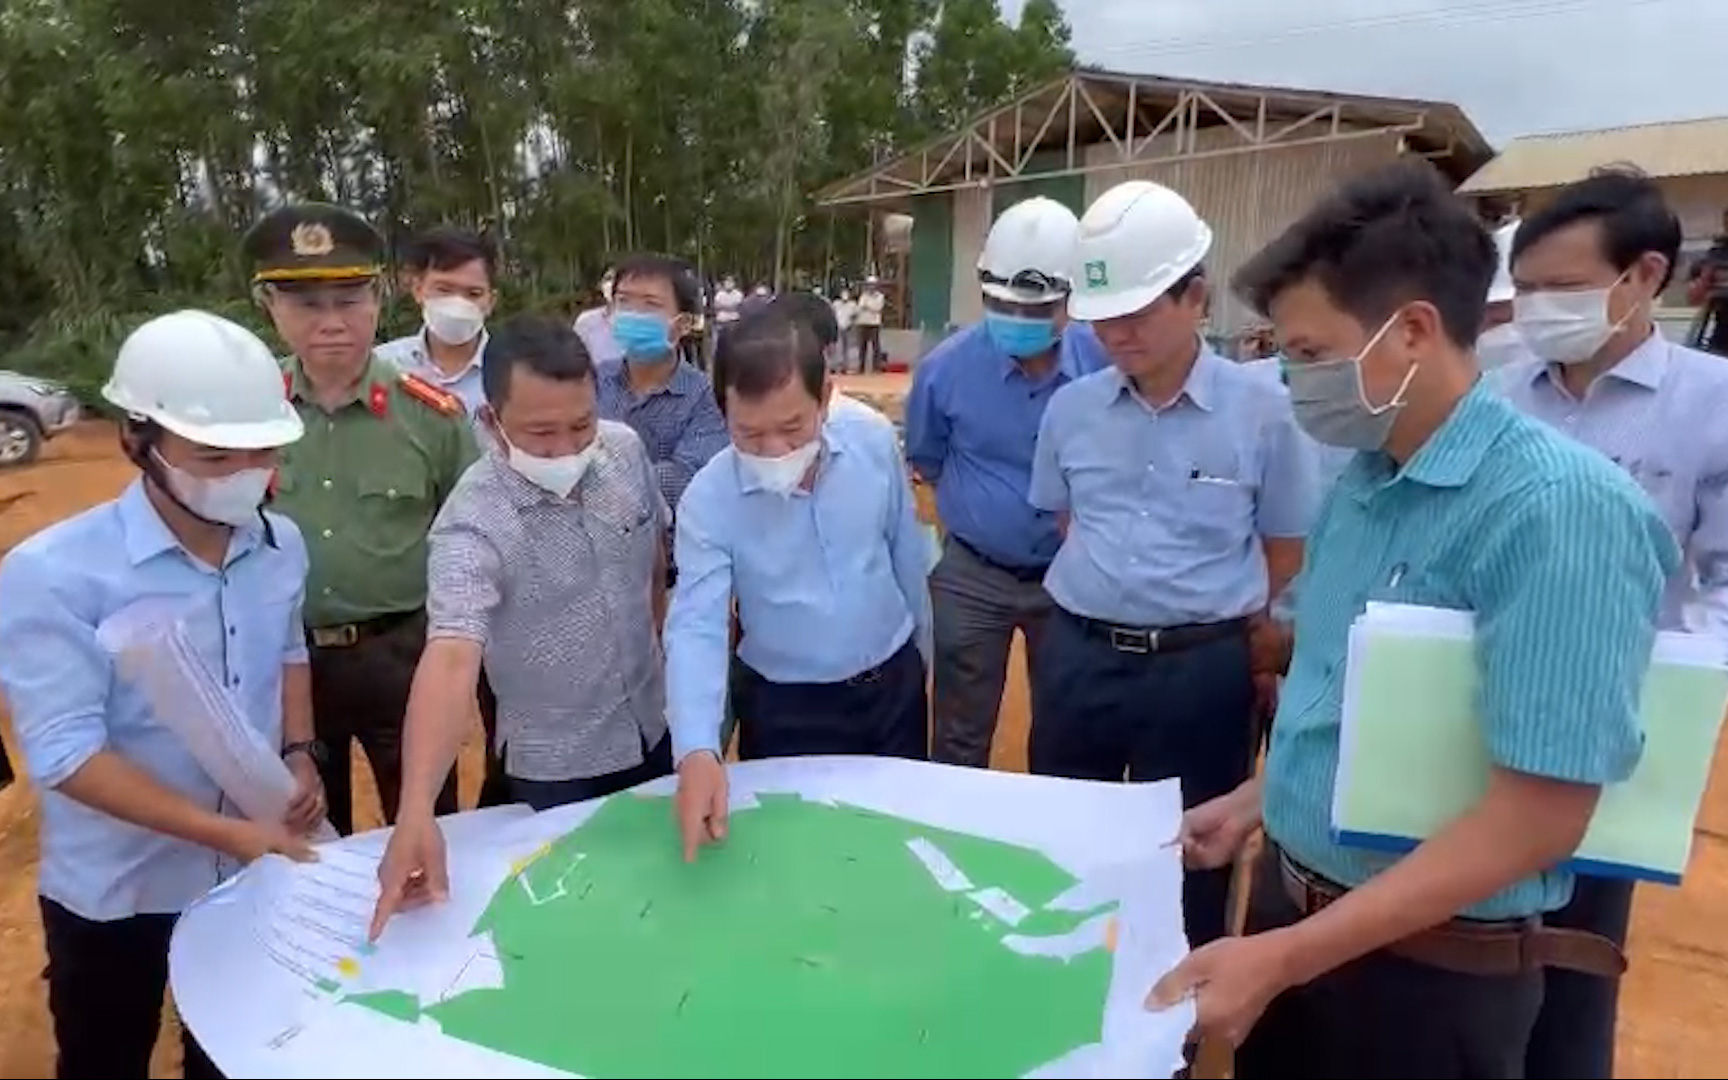 Chủ tịch tỉnh Quảng Ngãi đích thân ra hiện trường chỉ đạo nóng công trình Khu tái định cư 350 tỷ chậm tiến độ